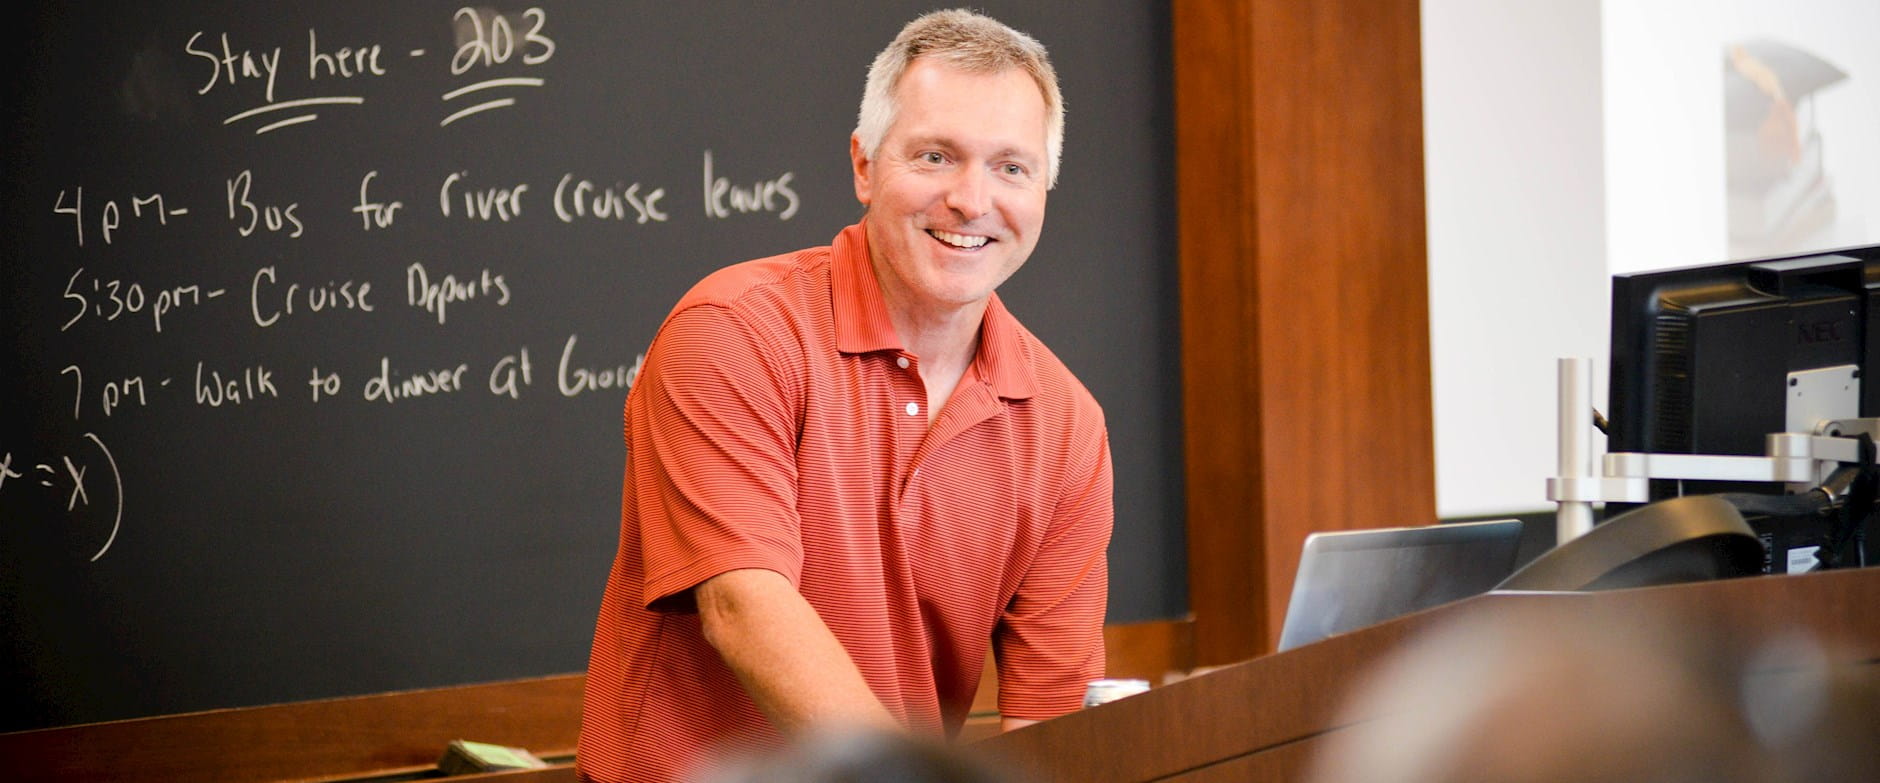 John List teaching in front of a chalkboard